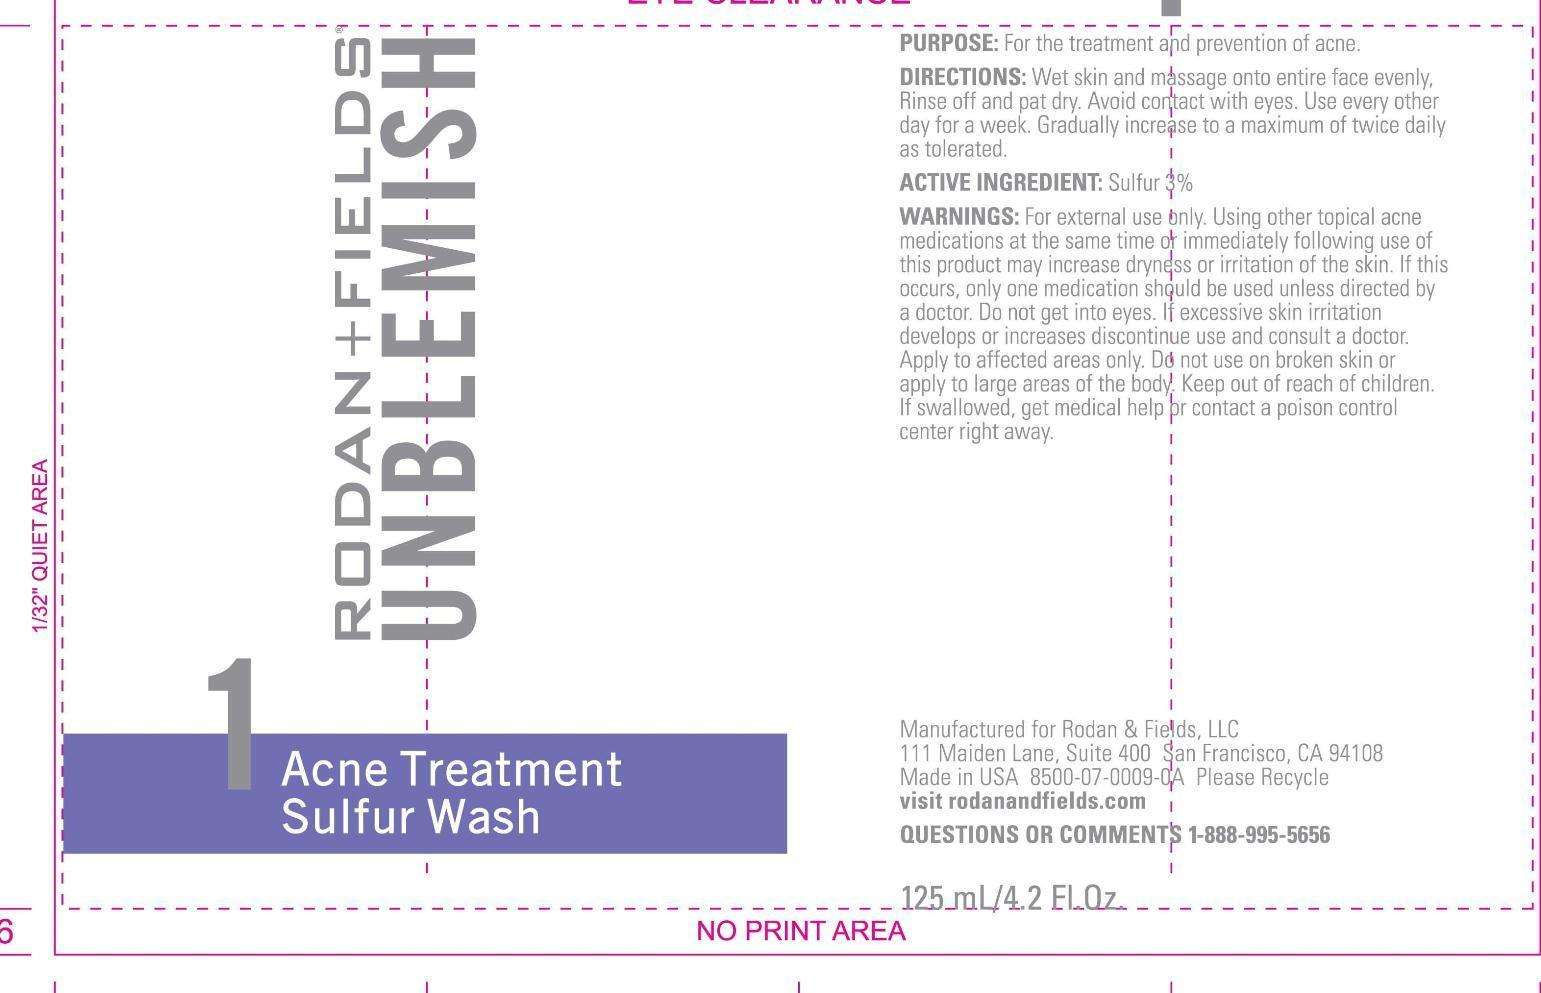 Acne Treatment Sulfur Wash